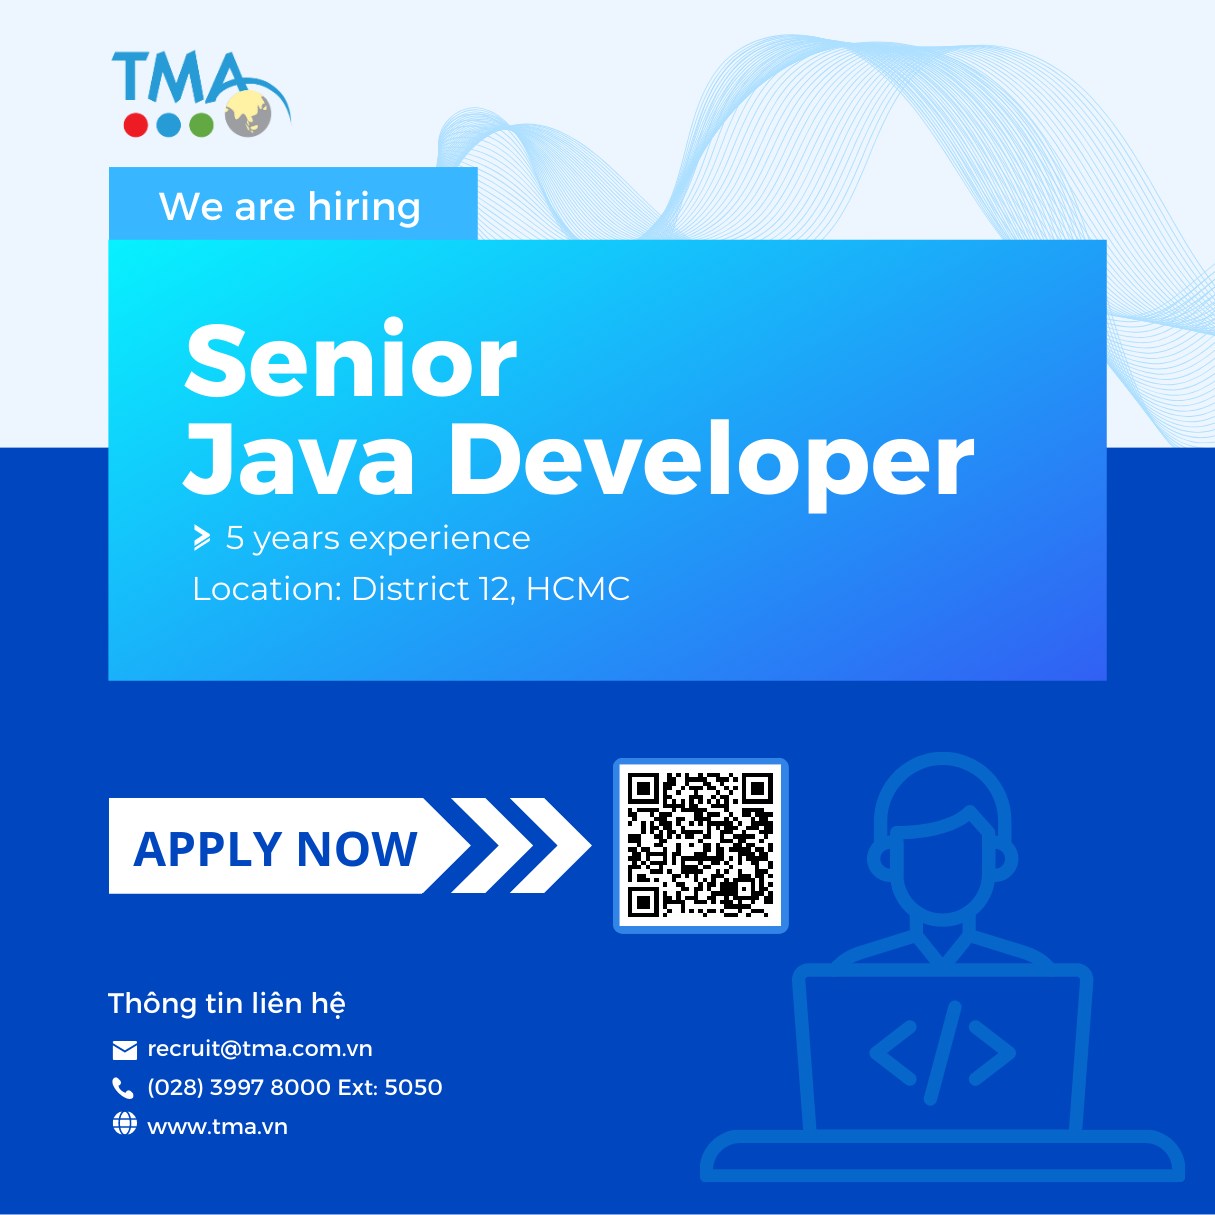 TMA is hiring Senior Java Developer